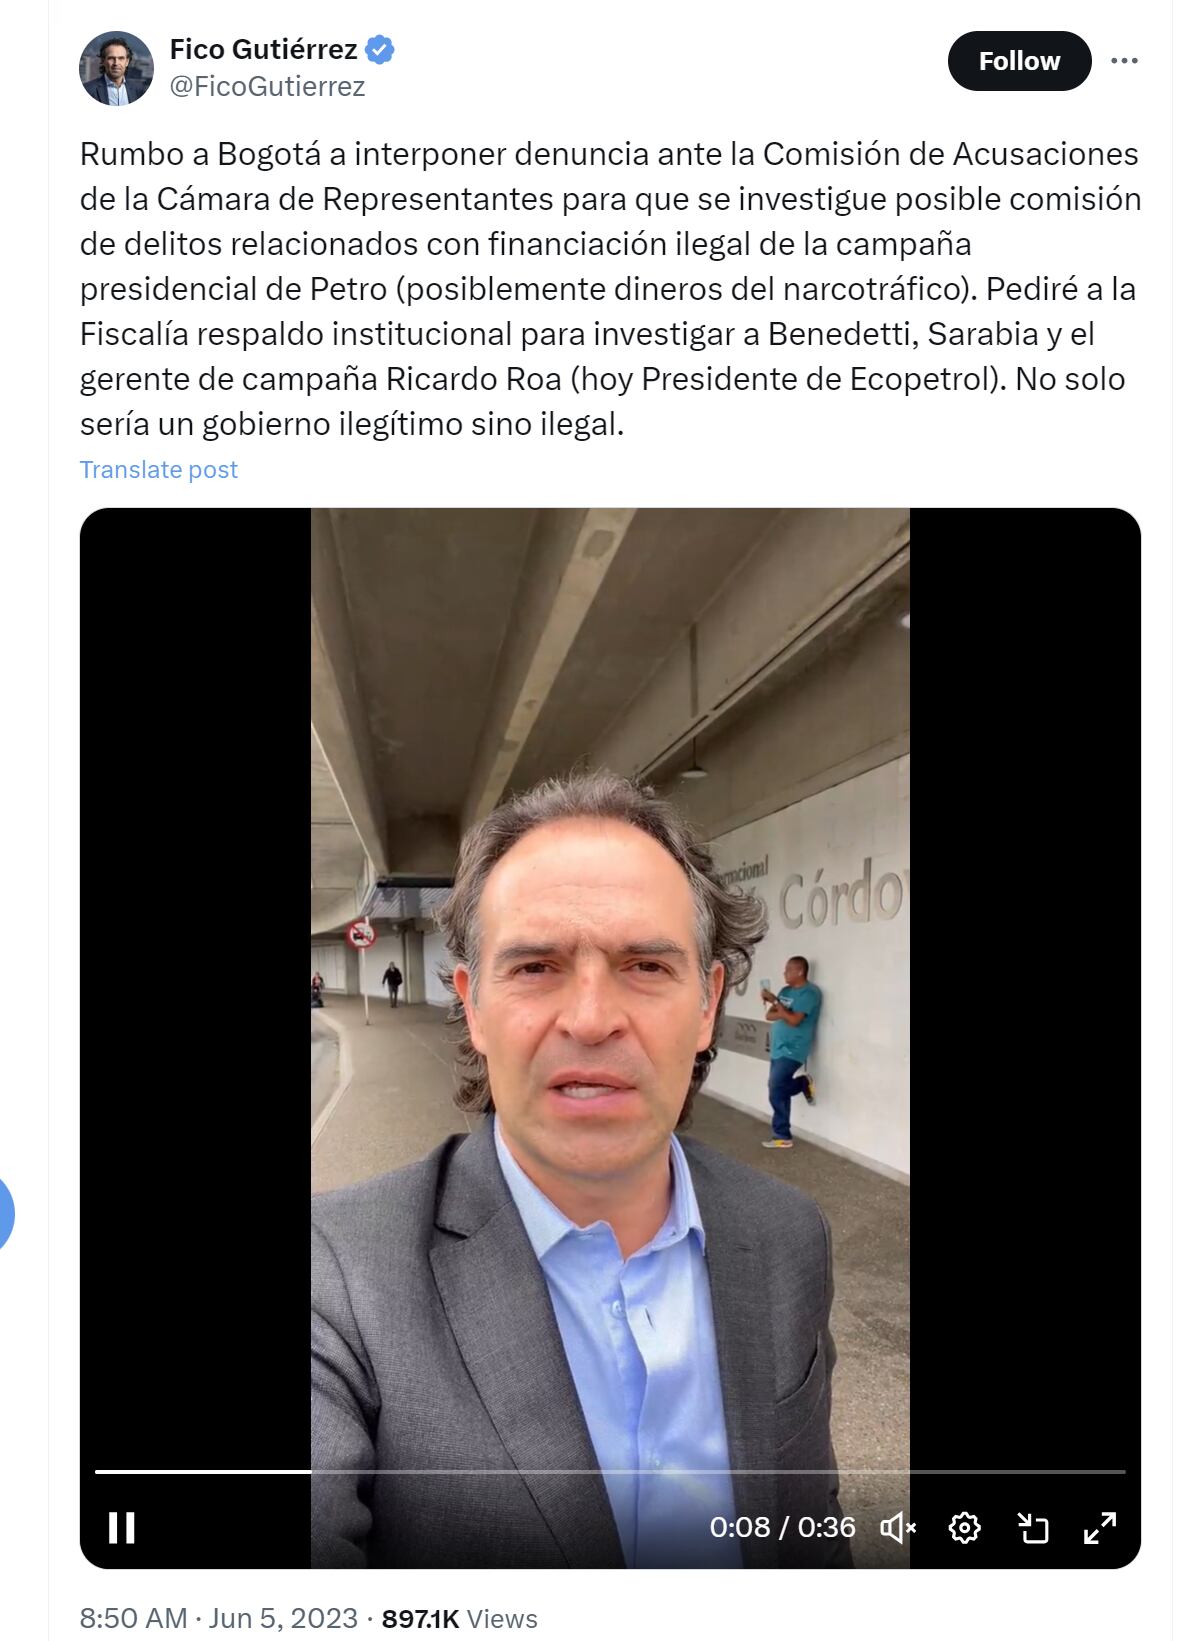 Federico Gutiérrez denunció a Gustavo Petro por la presunta financiación irregular de su campaña - crédito @FicoGutierrez/X